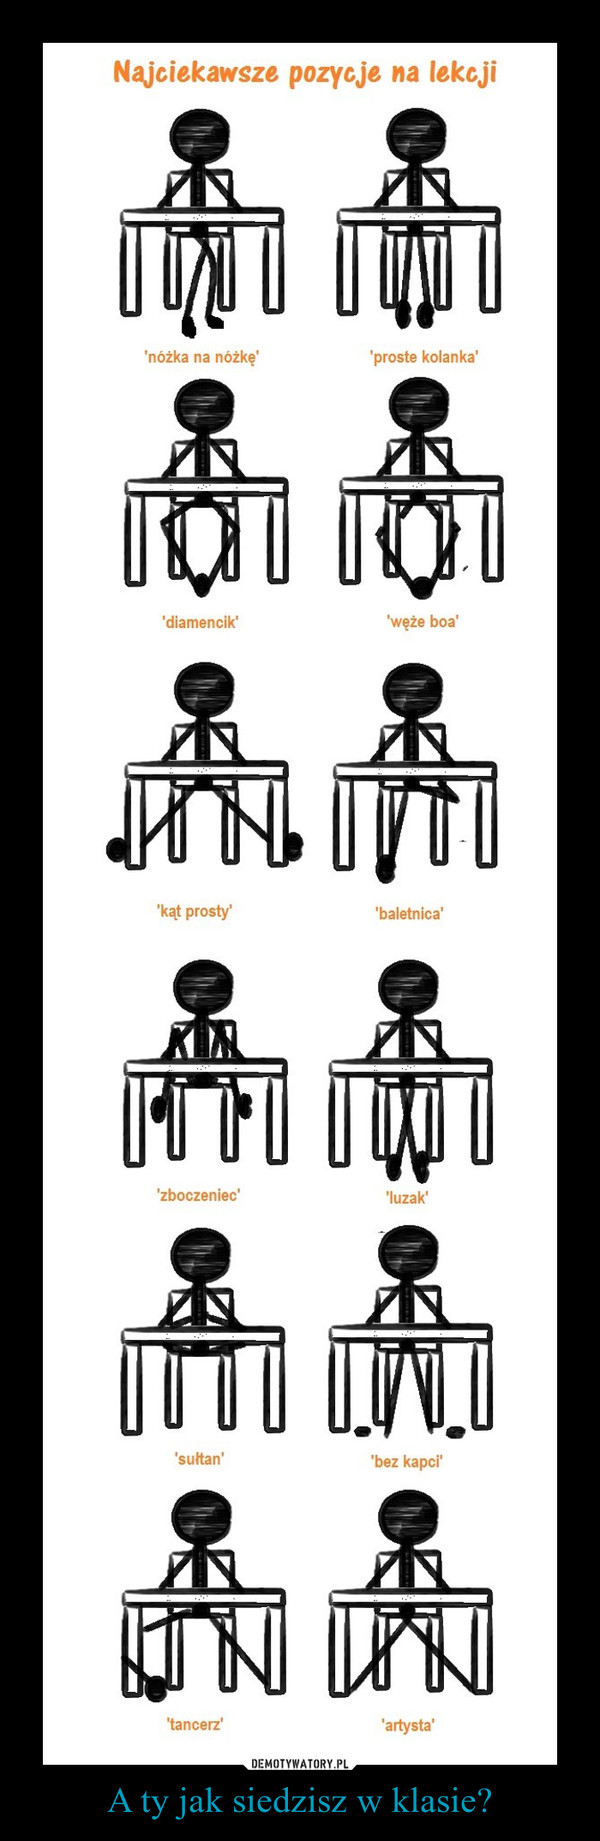 A ty jak siedzisz w klasie?